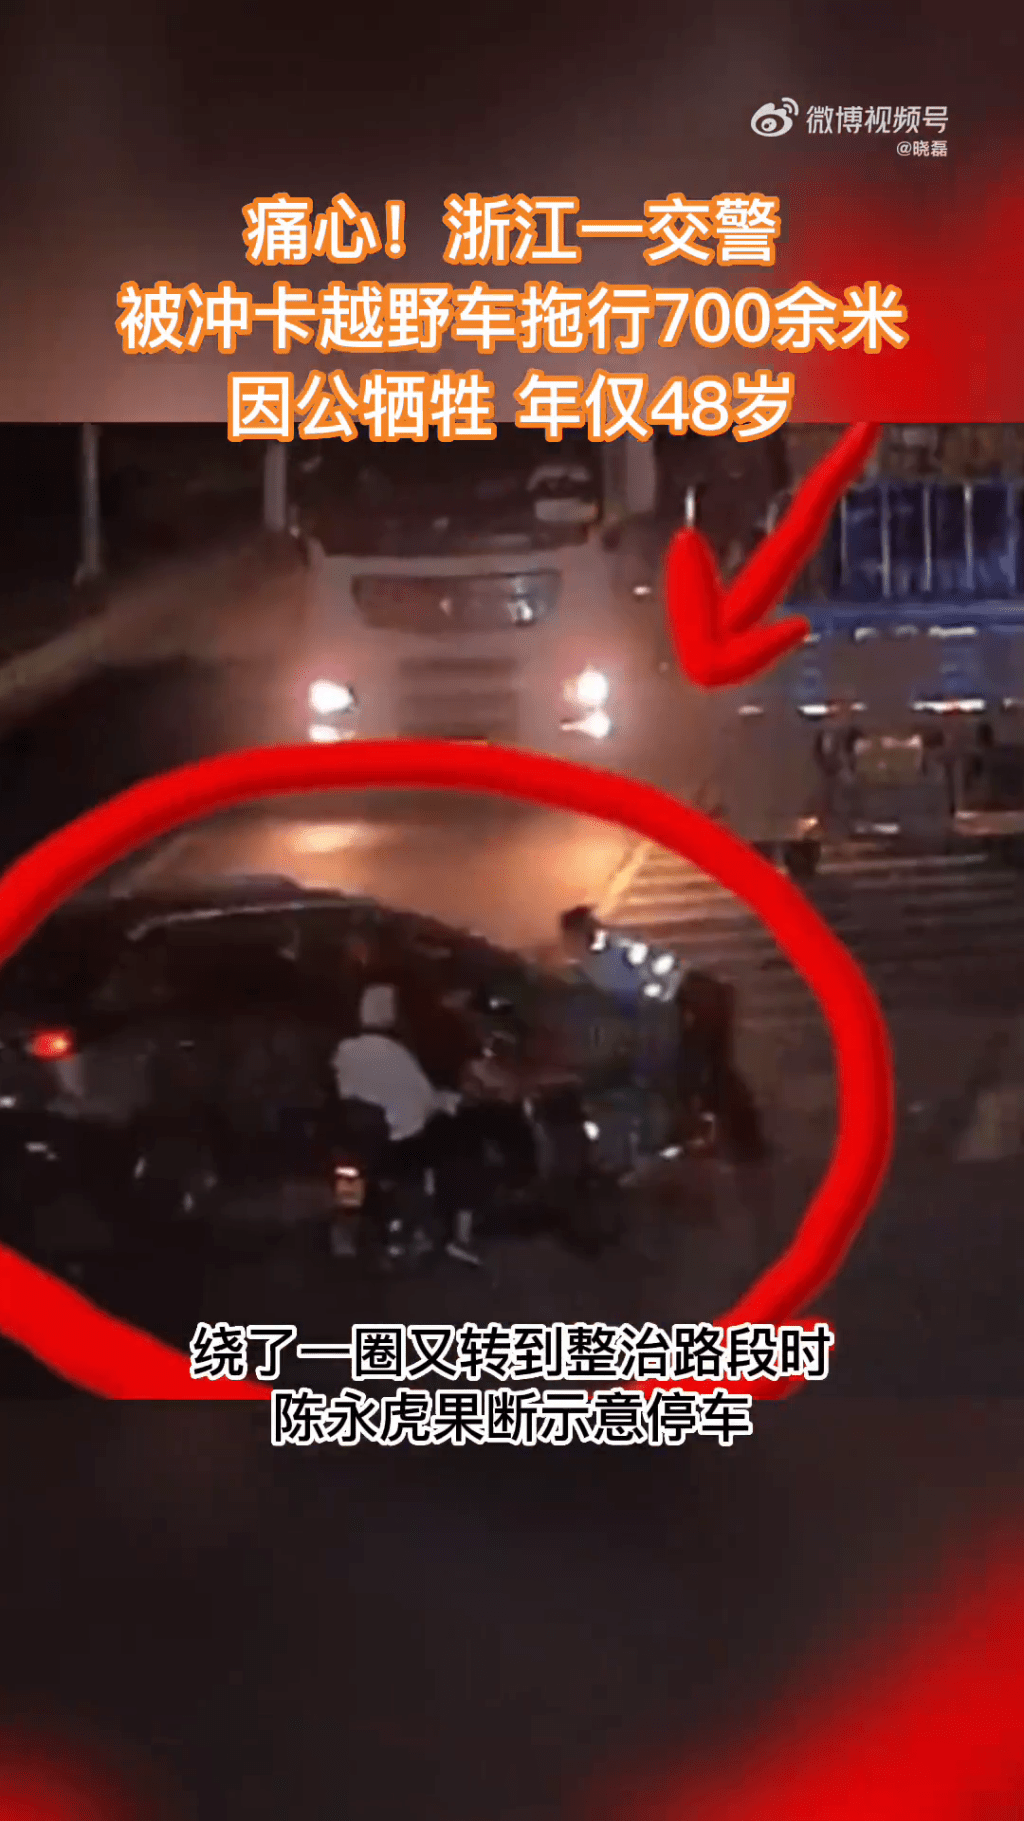 另一画面显示，陈永虎被顶上车前方的引擎盖上被拖行的情况。